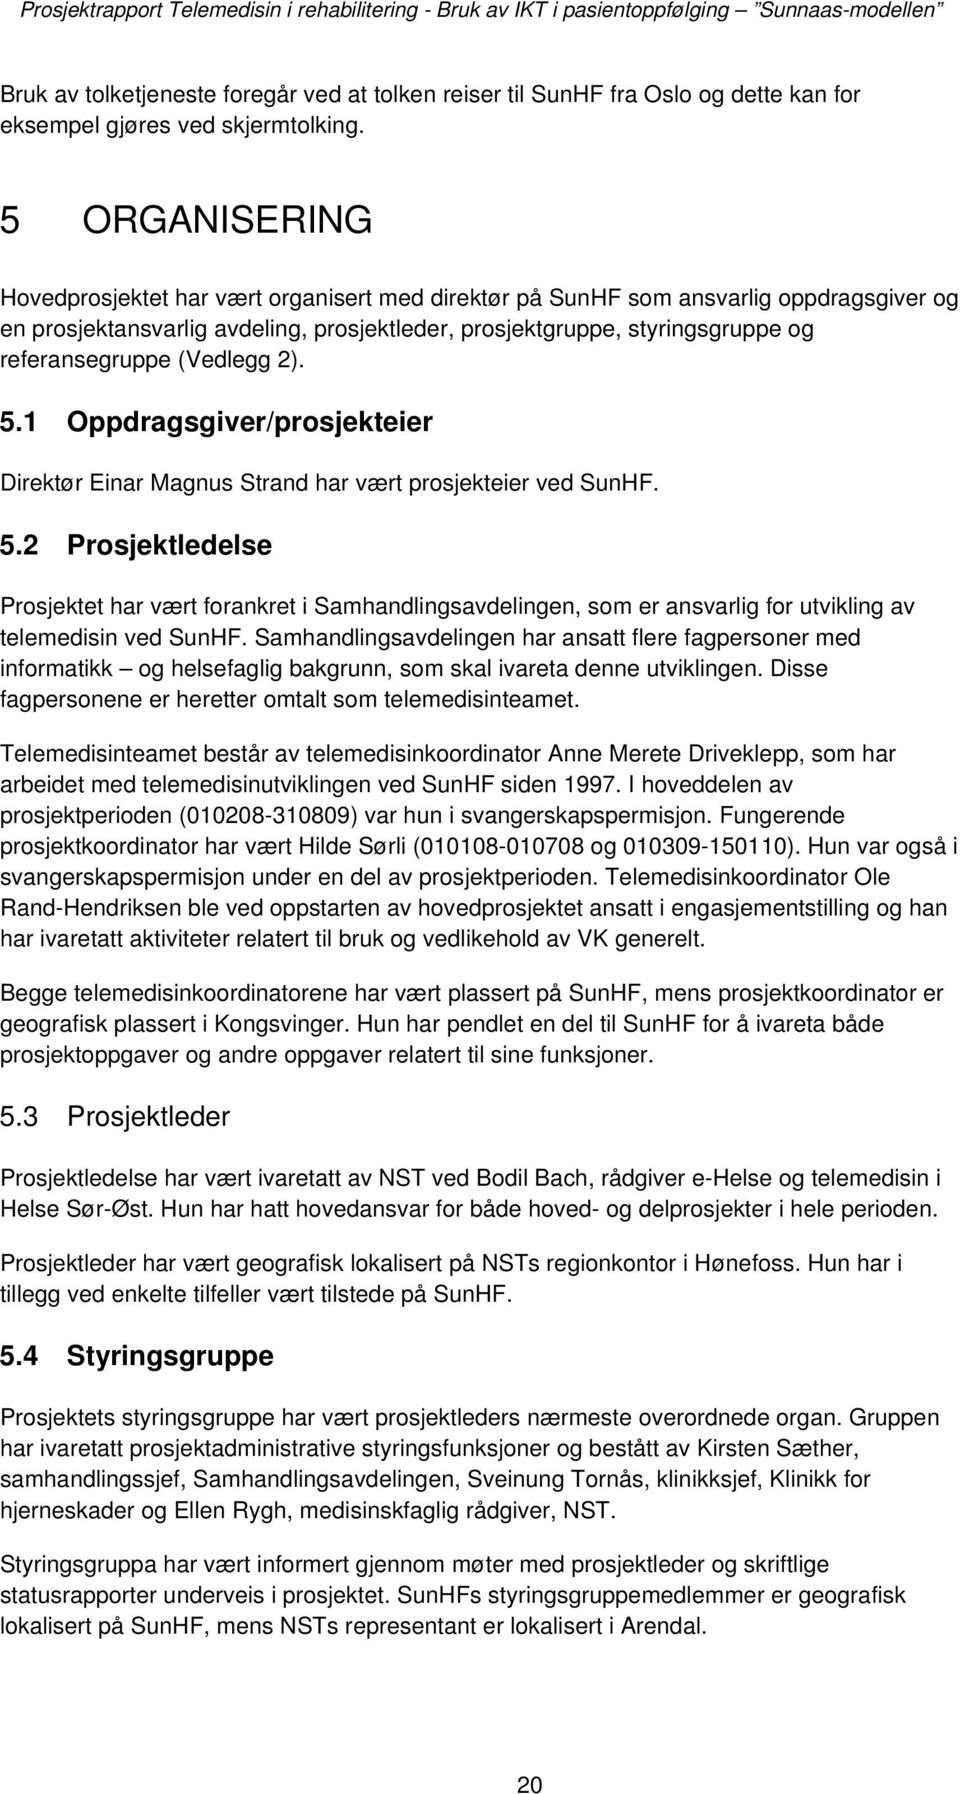 (Vedlegg 2). 5.1 Oppdragsgiver/prosjekteier Direktør Einar Magnus Strand har vært prosjekteier ved SunHF. 5.2 Prosjektledelse Prosjektet har vært forankret i Samhandlingsavdelingen, som er ansvarlig for utvikling av telemedisin ved SunHF.